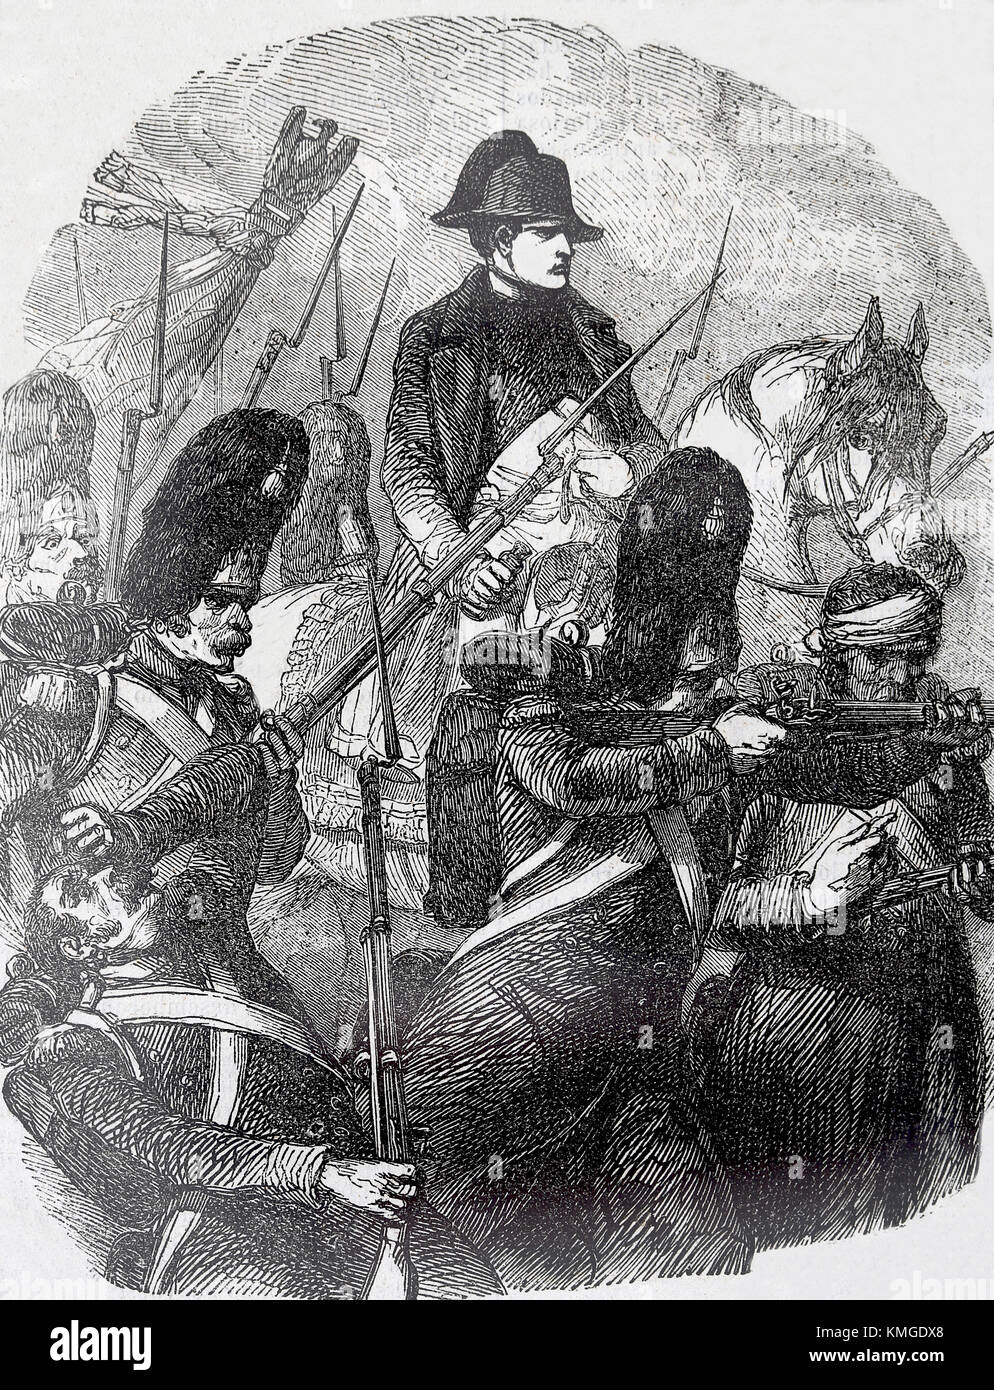 La batalla de Waterloo (18 de junio, 1815). beligerantes: imperio francés y seveth coalición. grabado, del siglo XIX. Foto de stock